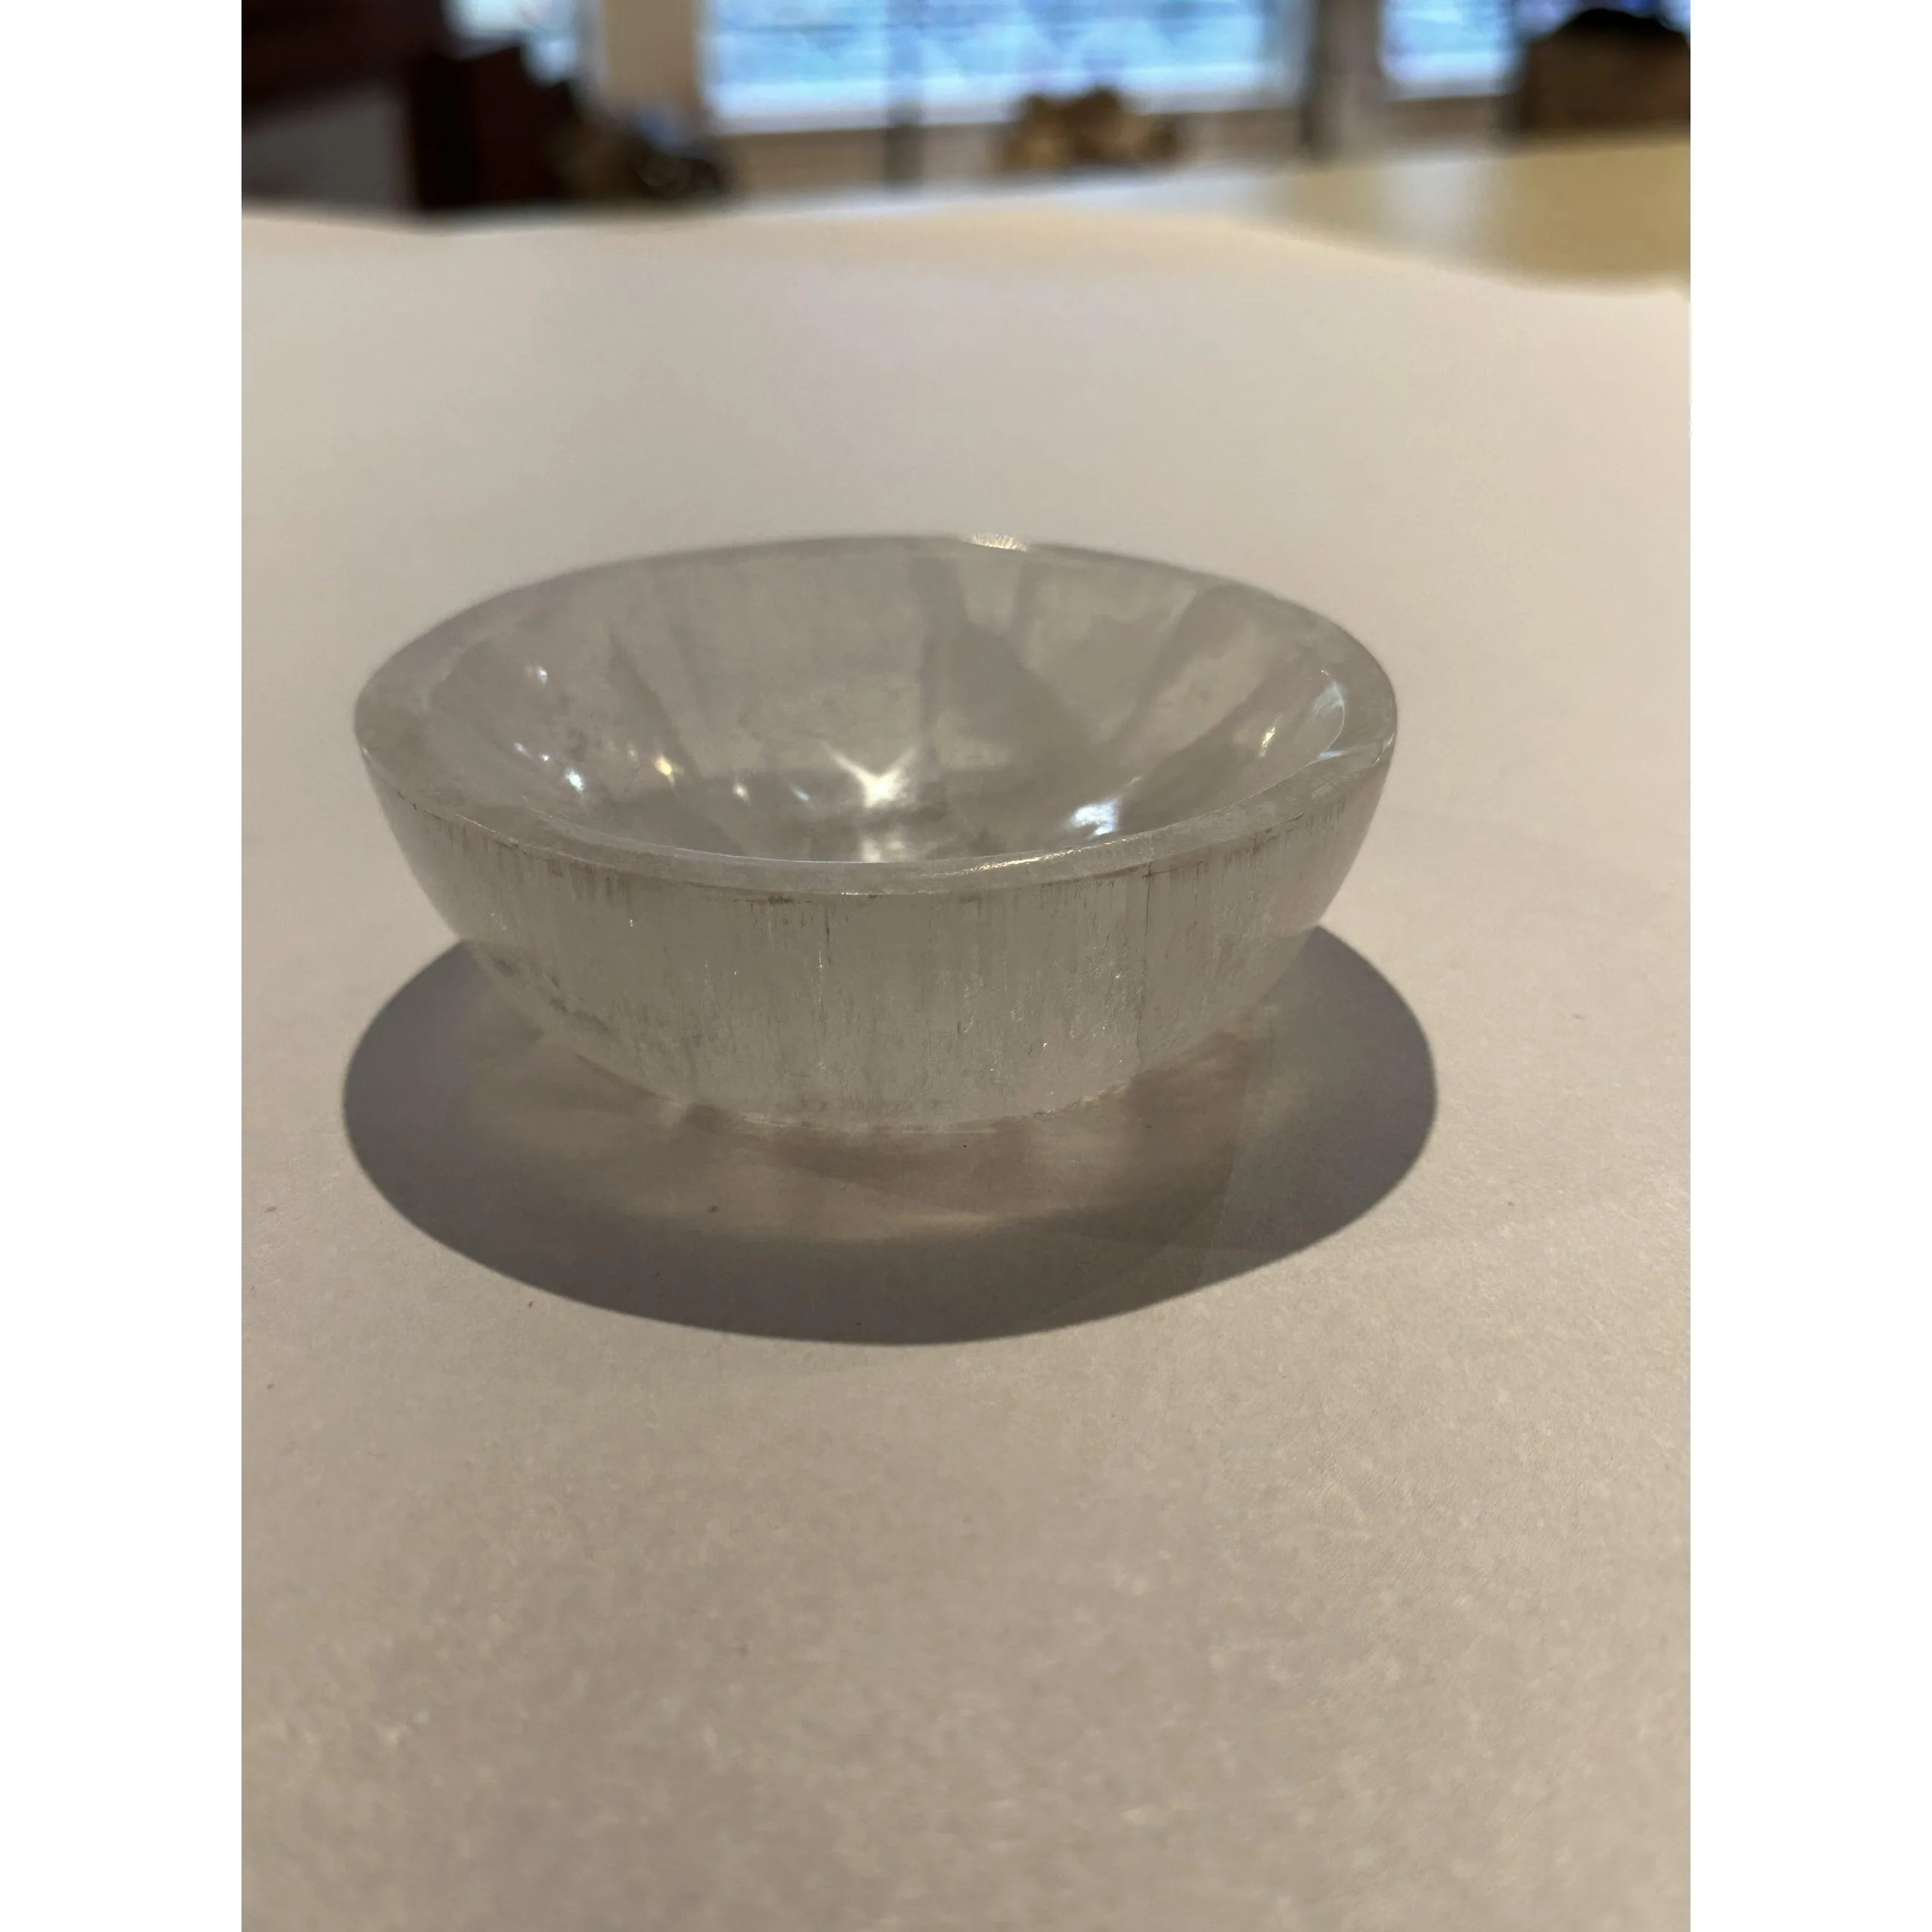 Selenite bowl, AAA grade selenite 4 inch Prehistoric Online